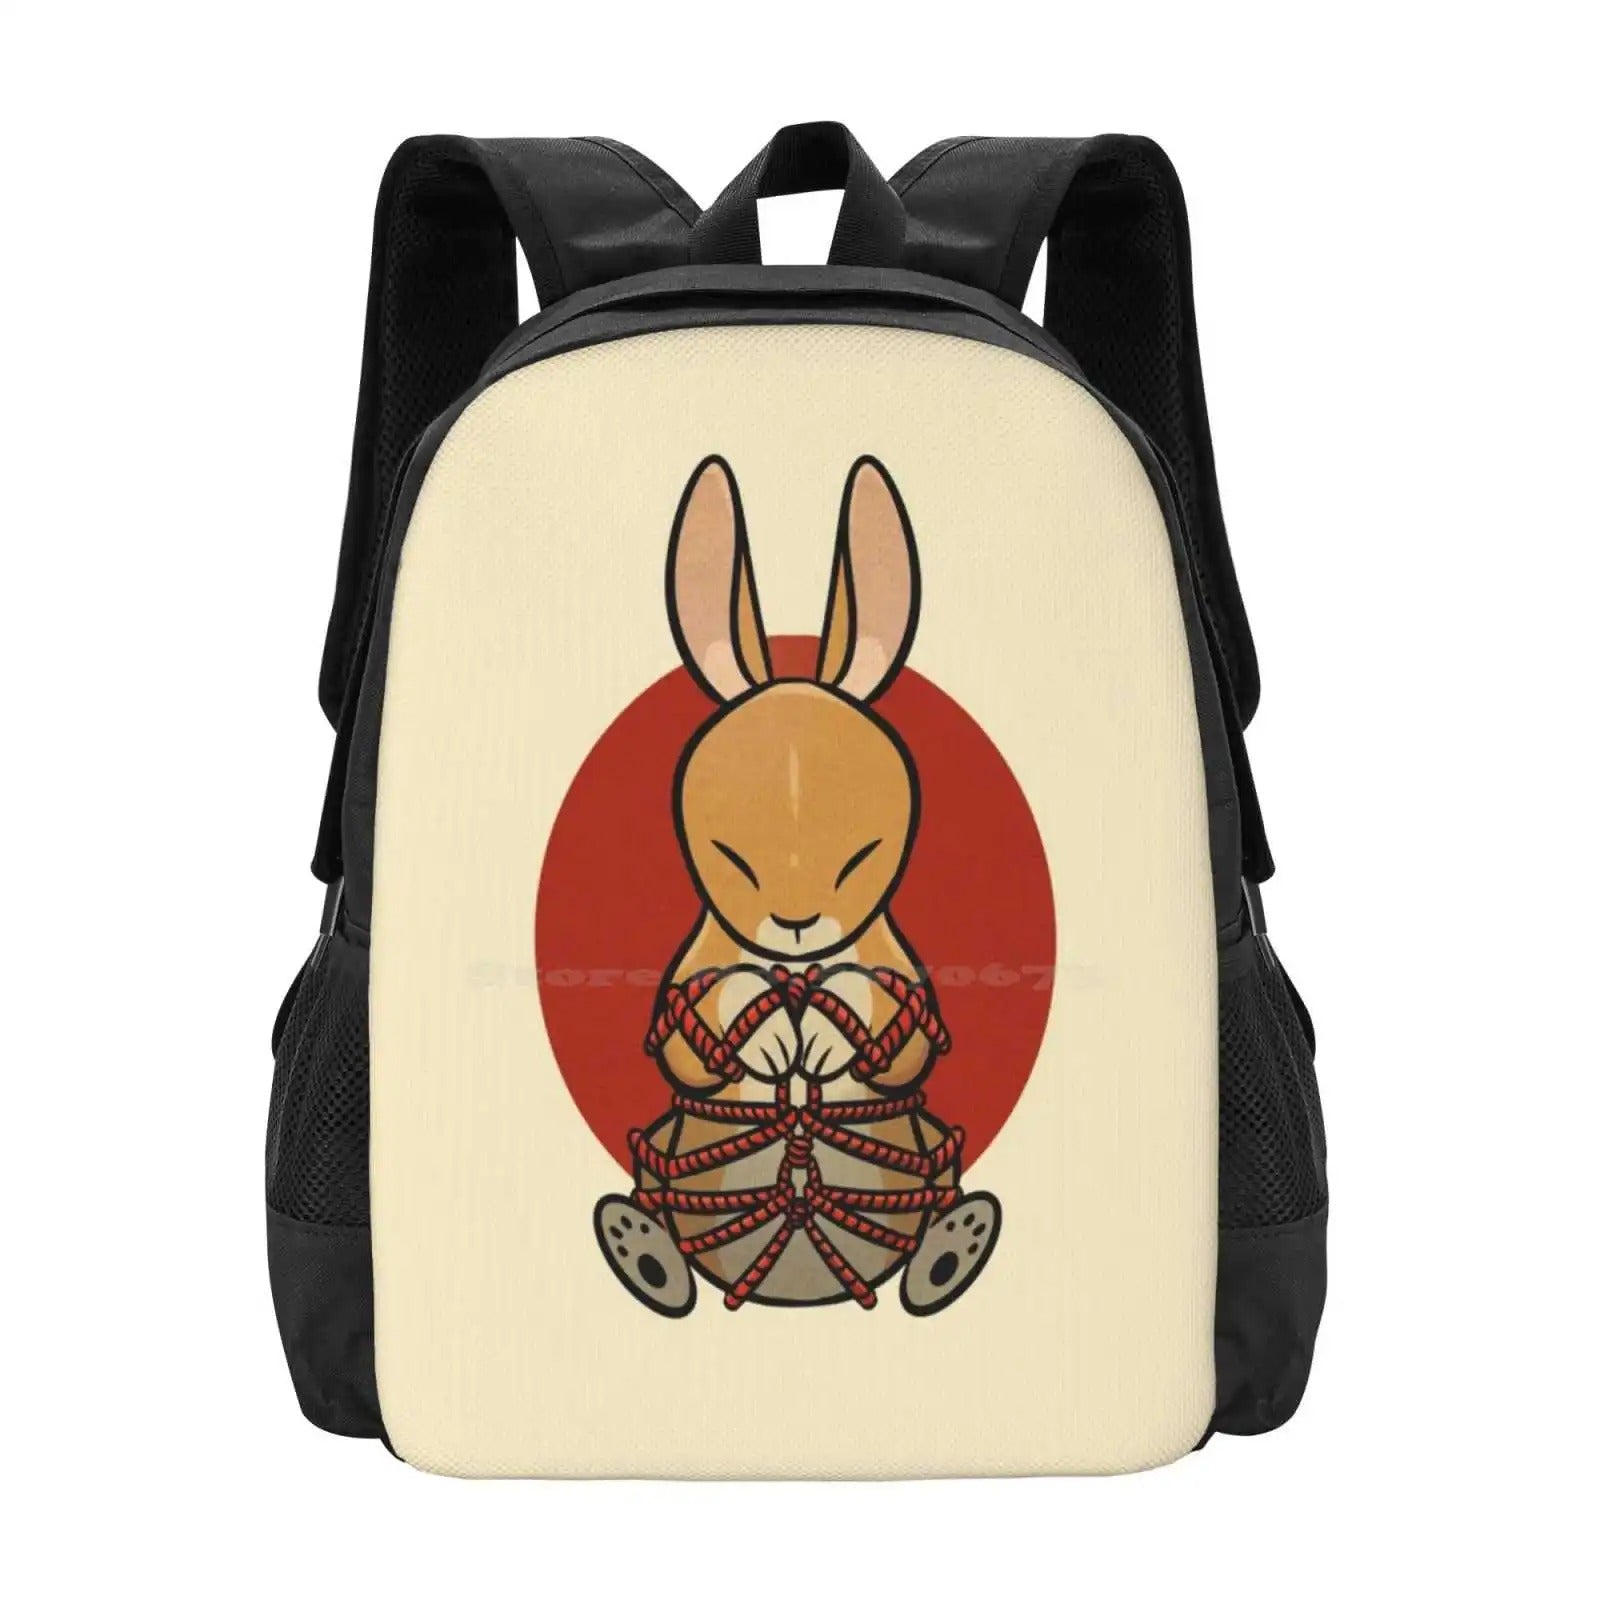 Psycho Bunny Backpack - Backpack - Black